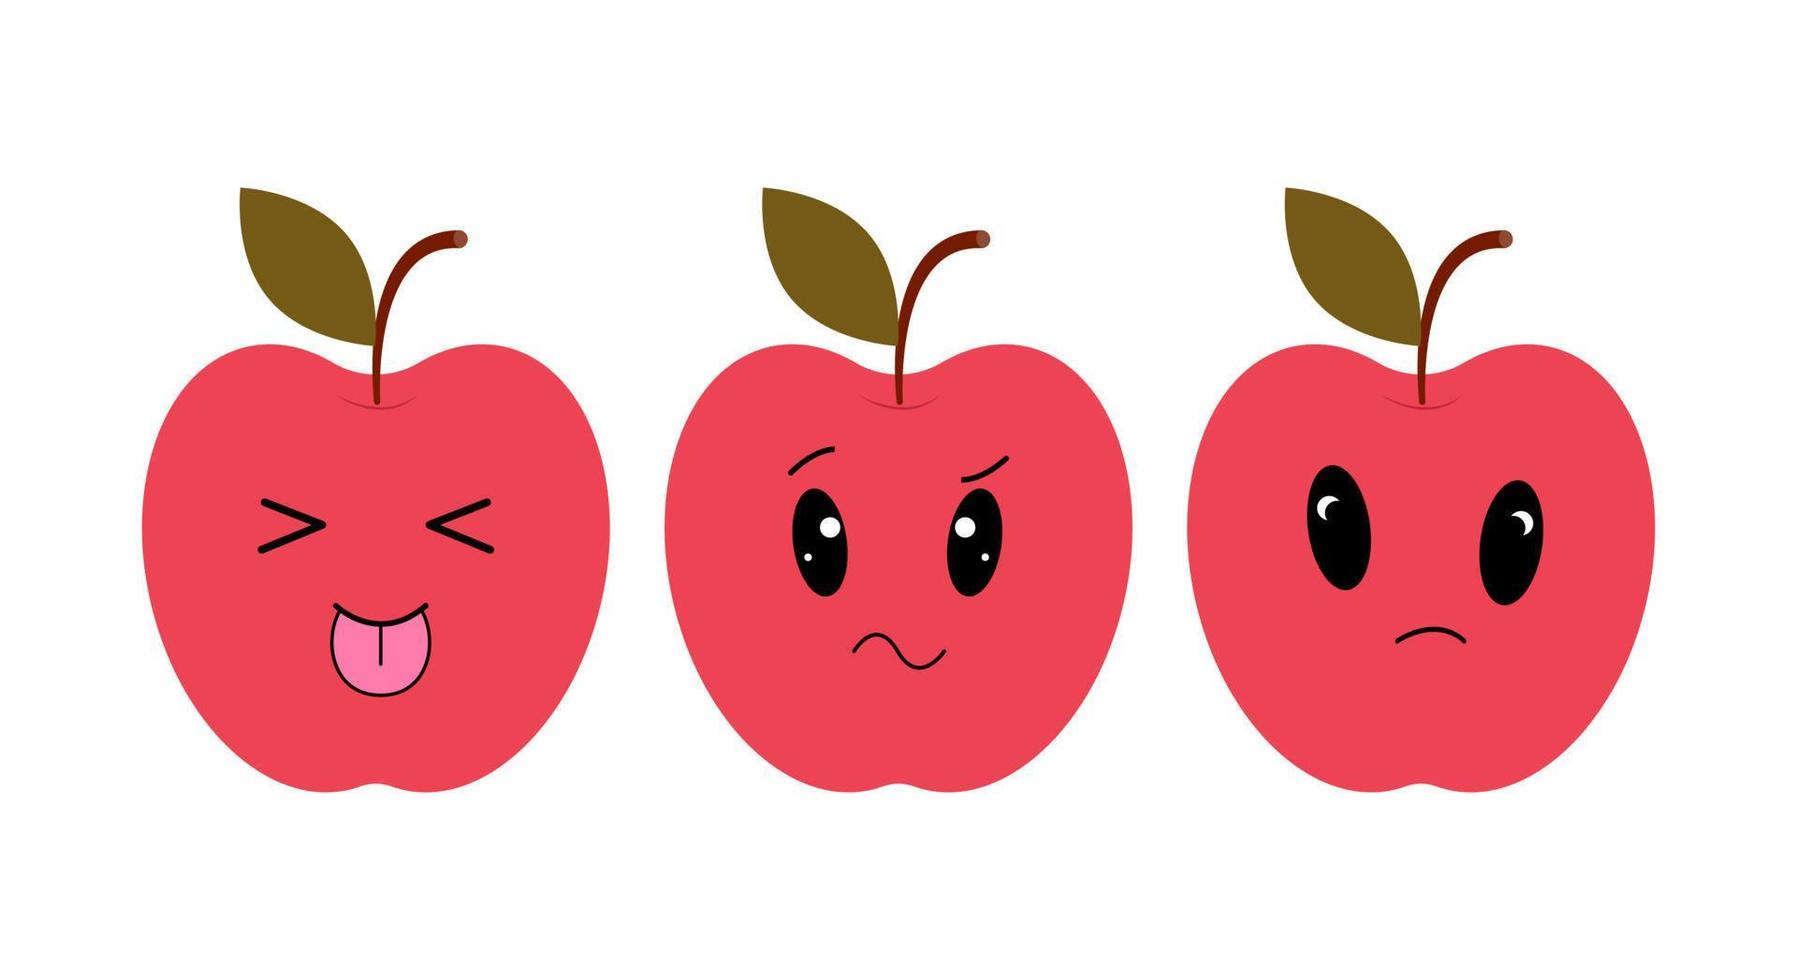 röd äpple med söt ögon. platt design vektor illustration av röd äpple